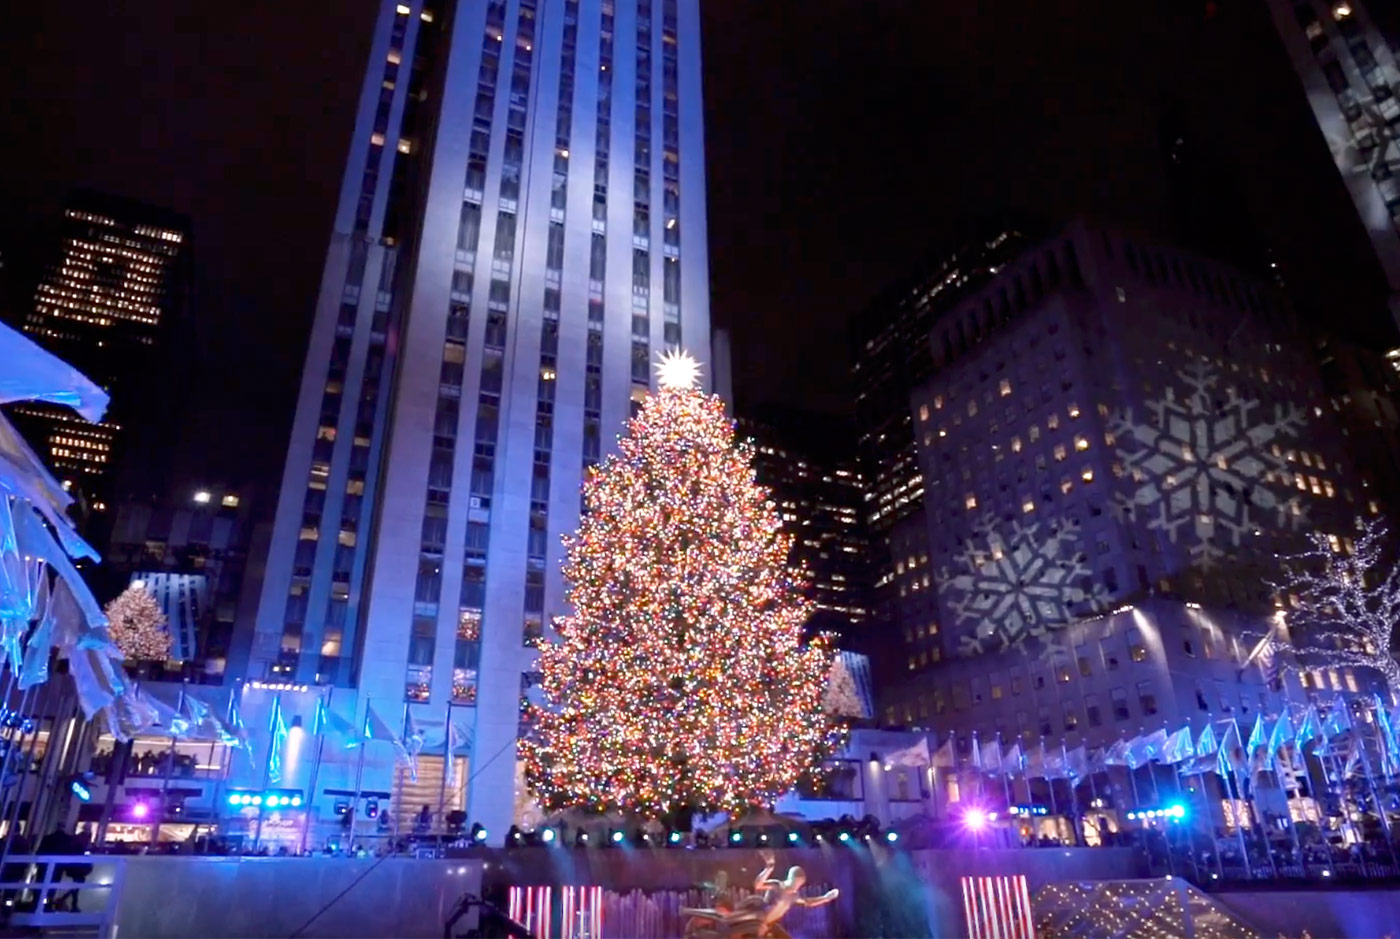 Il maestoso albero di Natale di New York